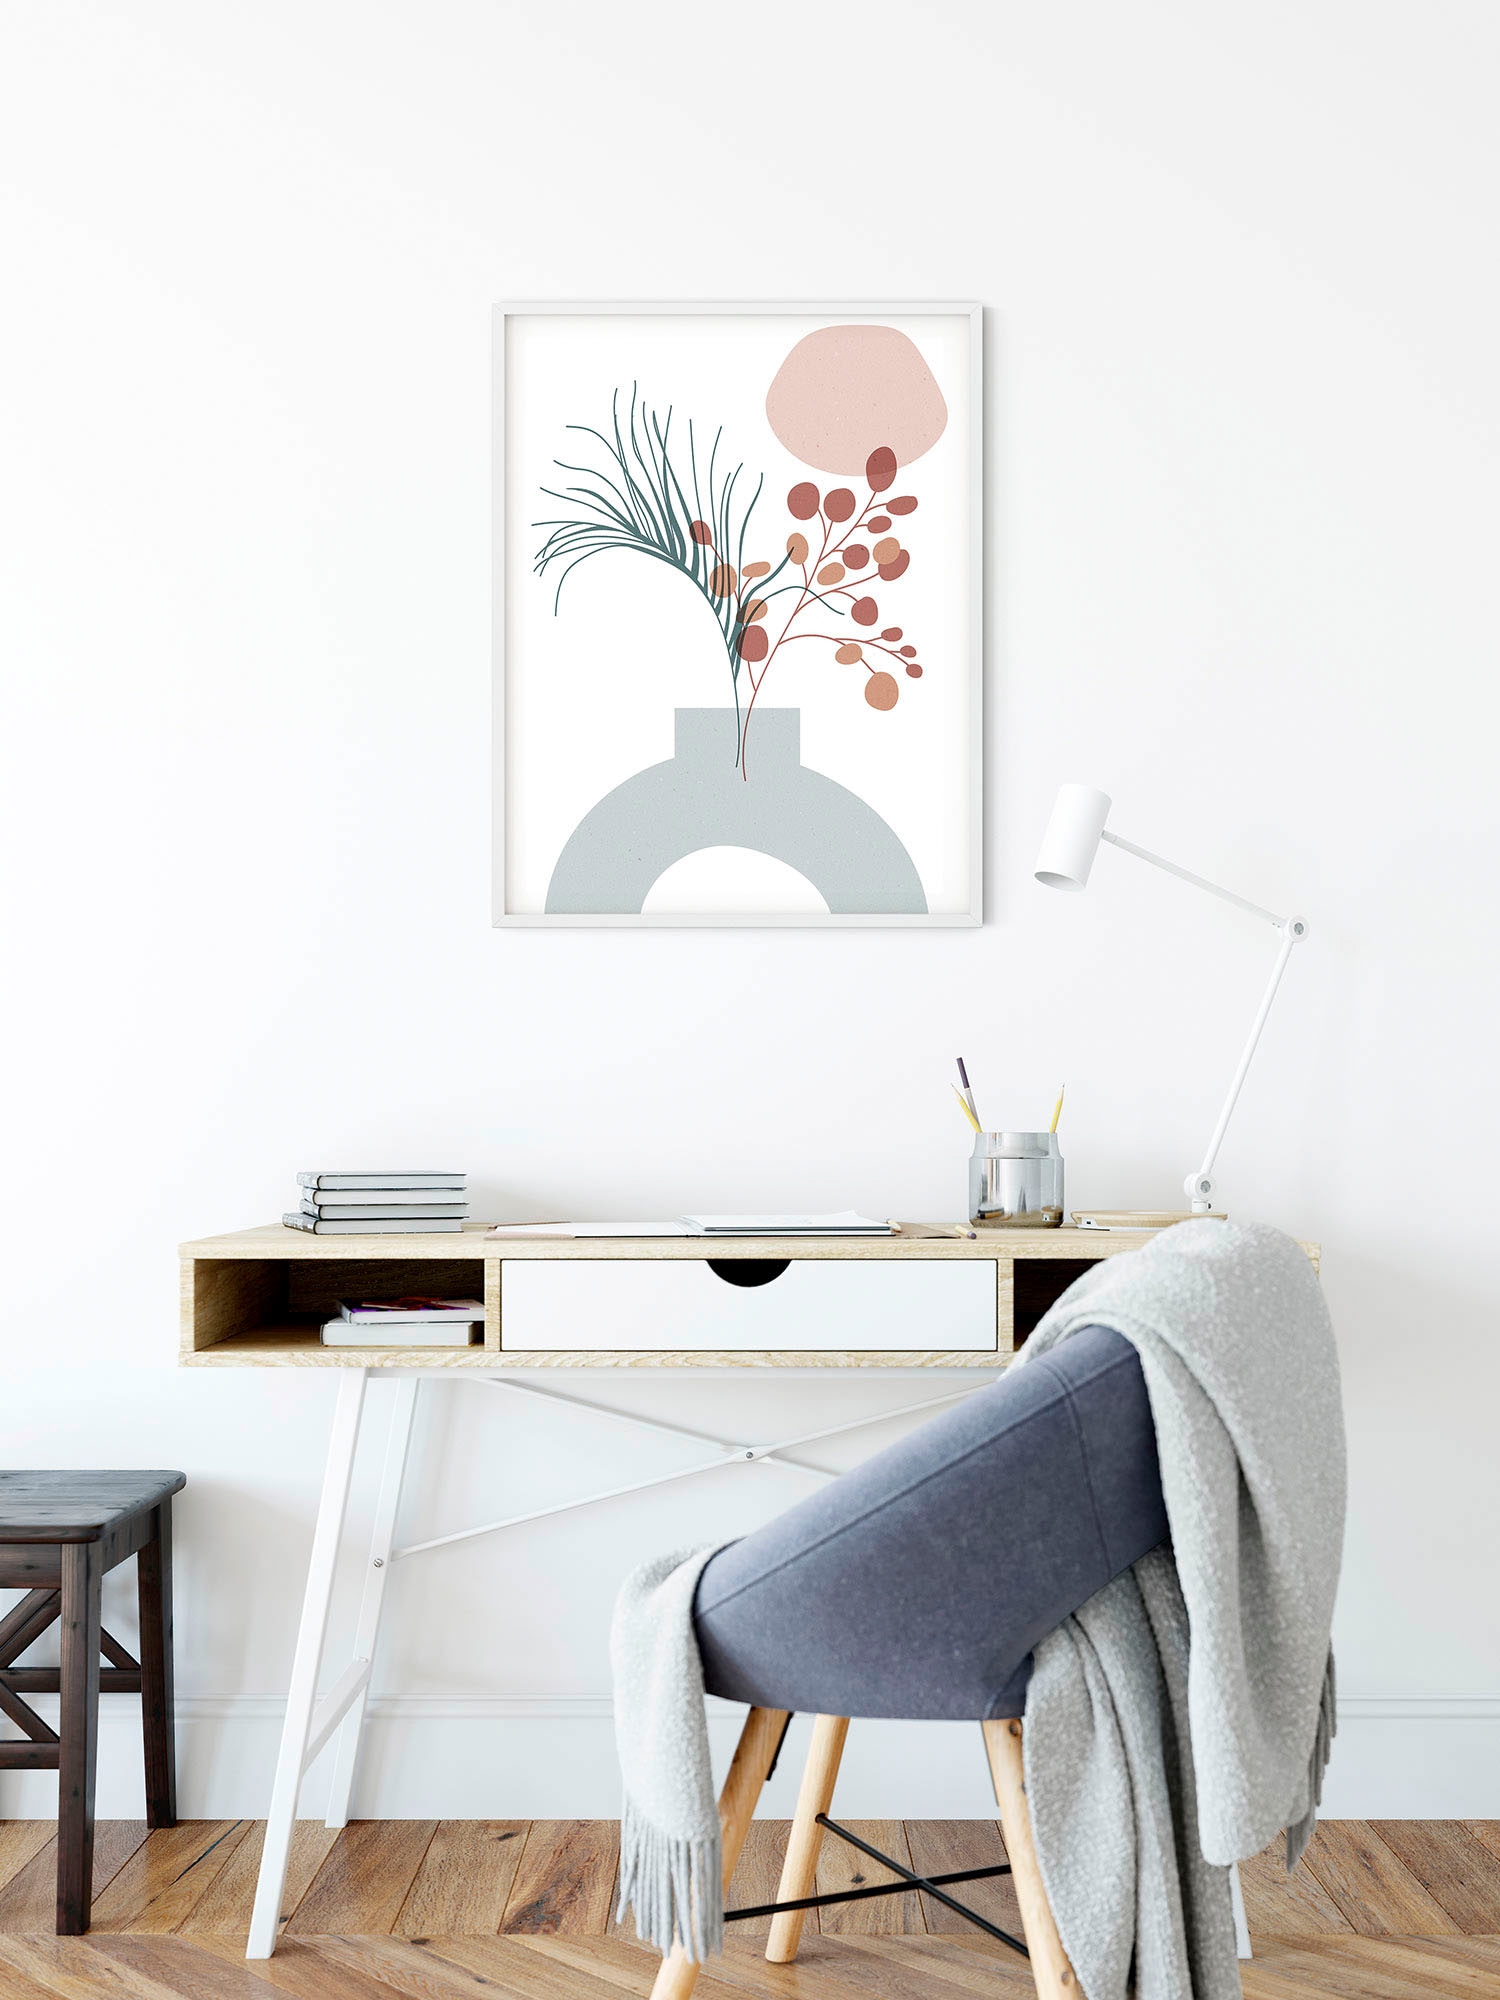 Komar Wandbild »Bohemian Vase«, (1 St.), Deutsches Premium-Poster Fotopapier mit seidenmatter Oberfläche und hoher Lichtbeständigkeit. Für fotorealistische Drucke mit gestochen scharfen Details und hervorragender Farbbrillanz.